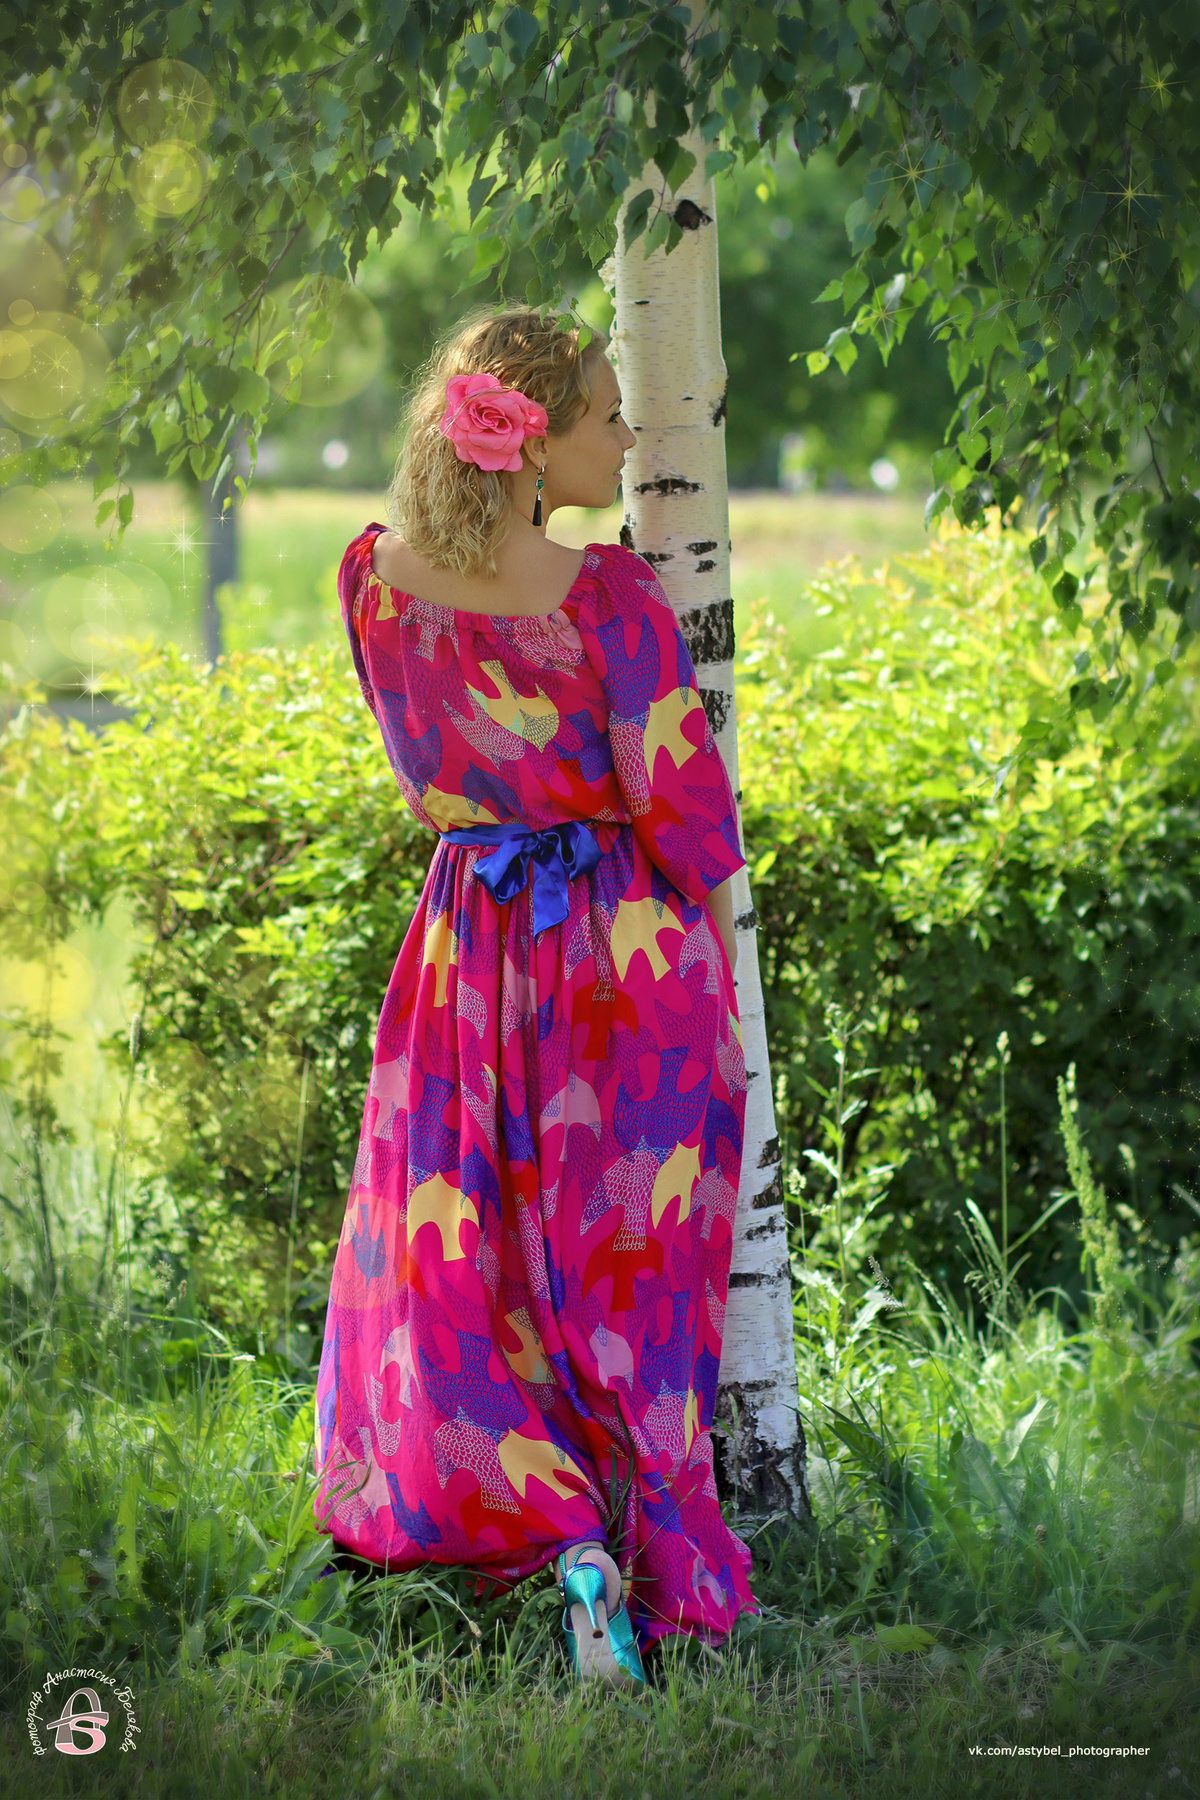 У берёзы девушка у берёзы платье женщина сад красивая петербург яблоневый лето июнь солнечно парк